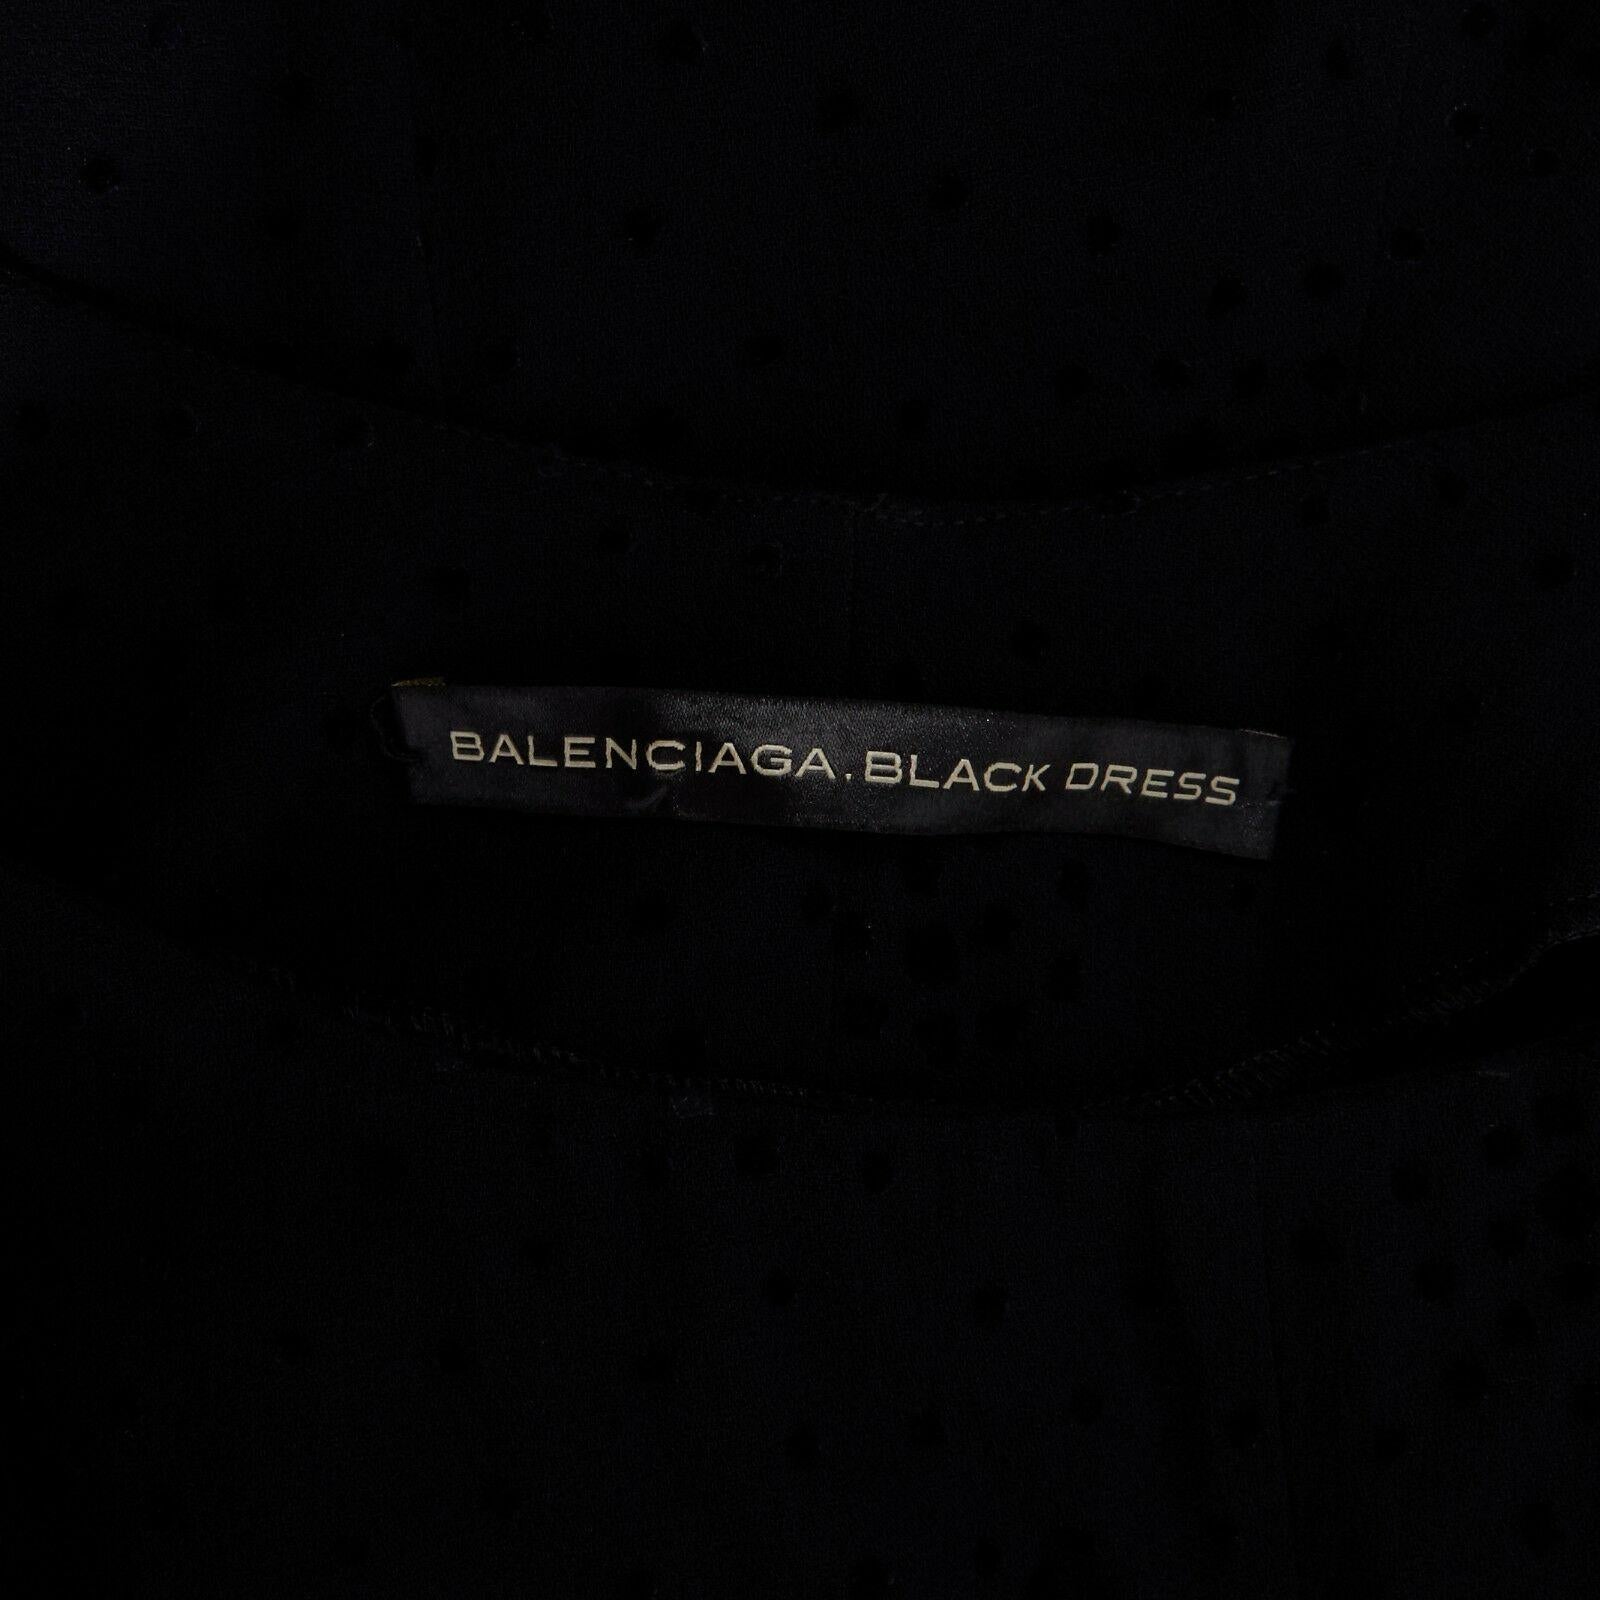 BALENCIAGA Black Dress velvet dot rusched waist mini dress S FR36 US4 5